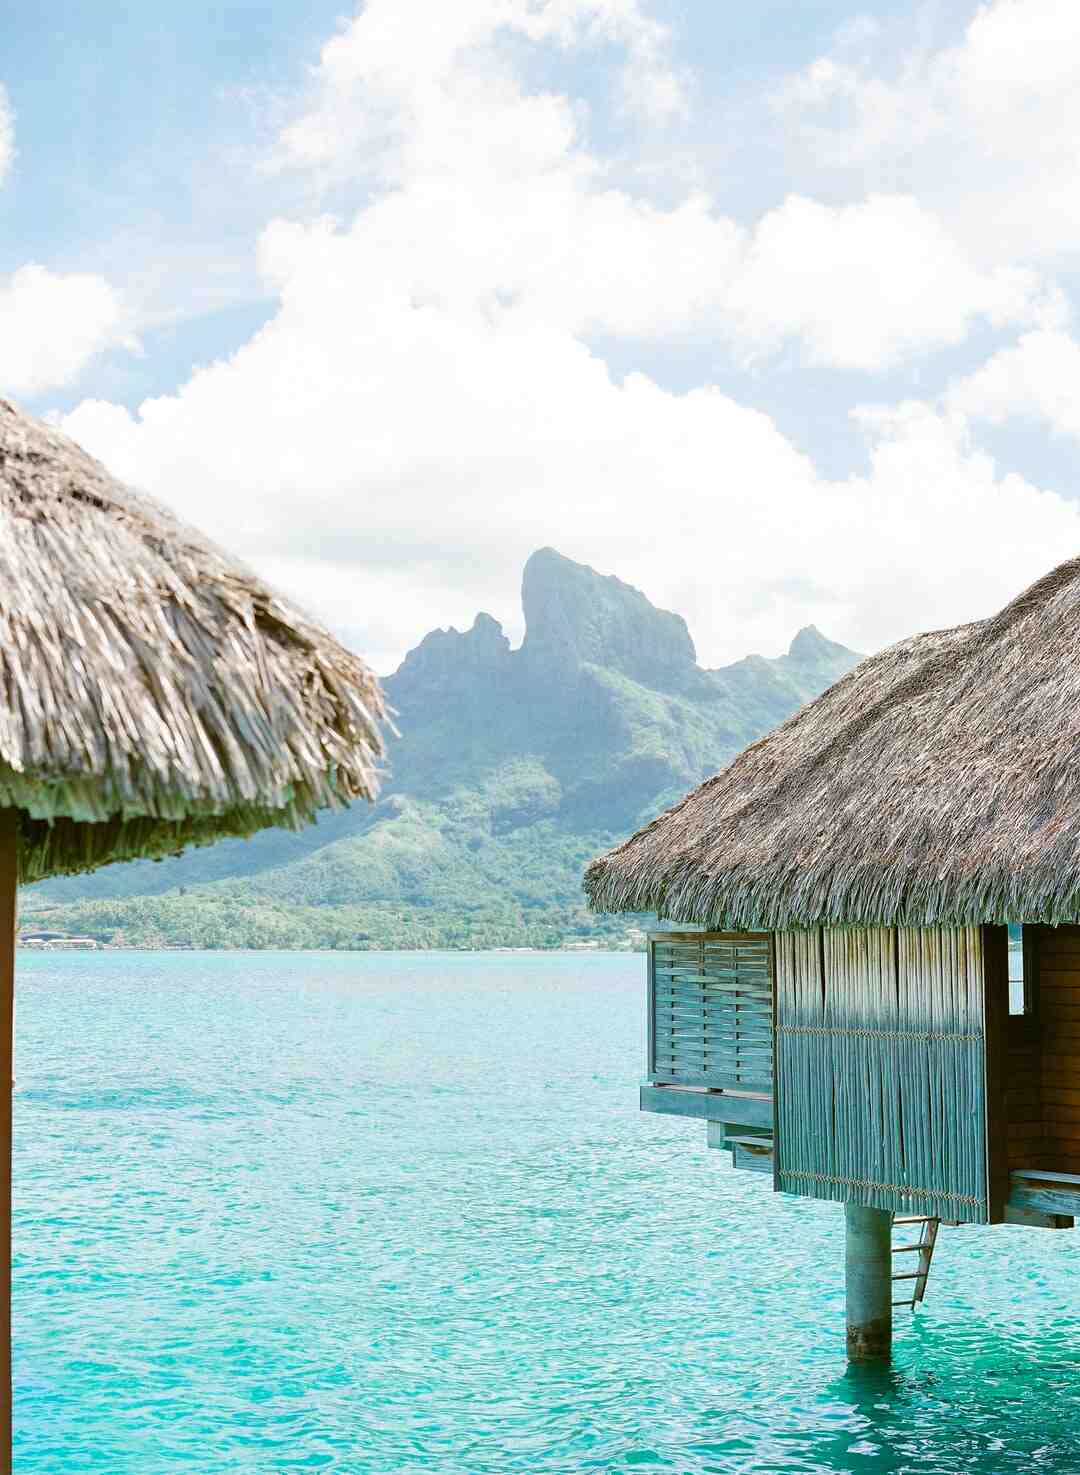 When to go to Bora Bora?